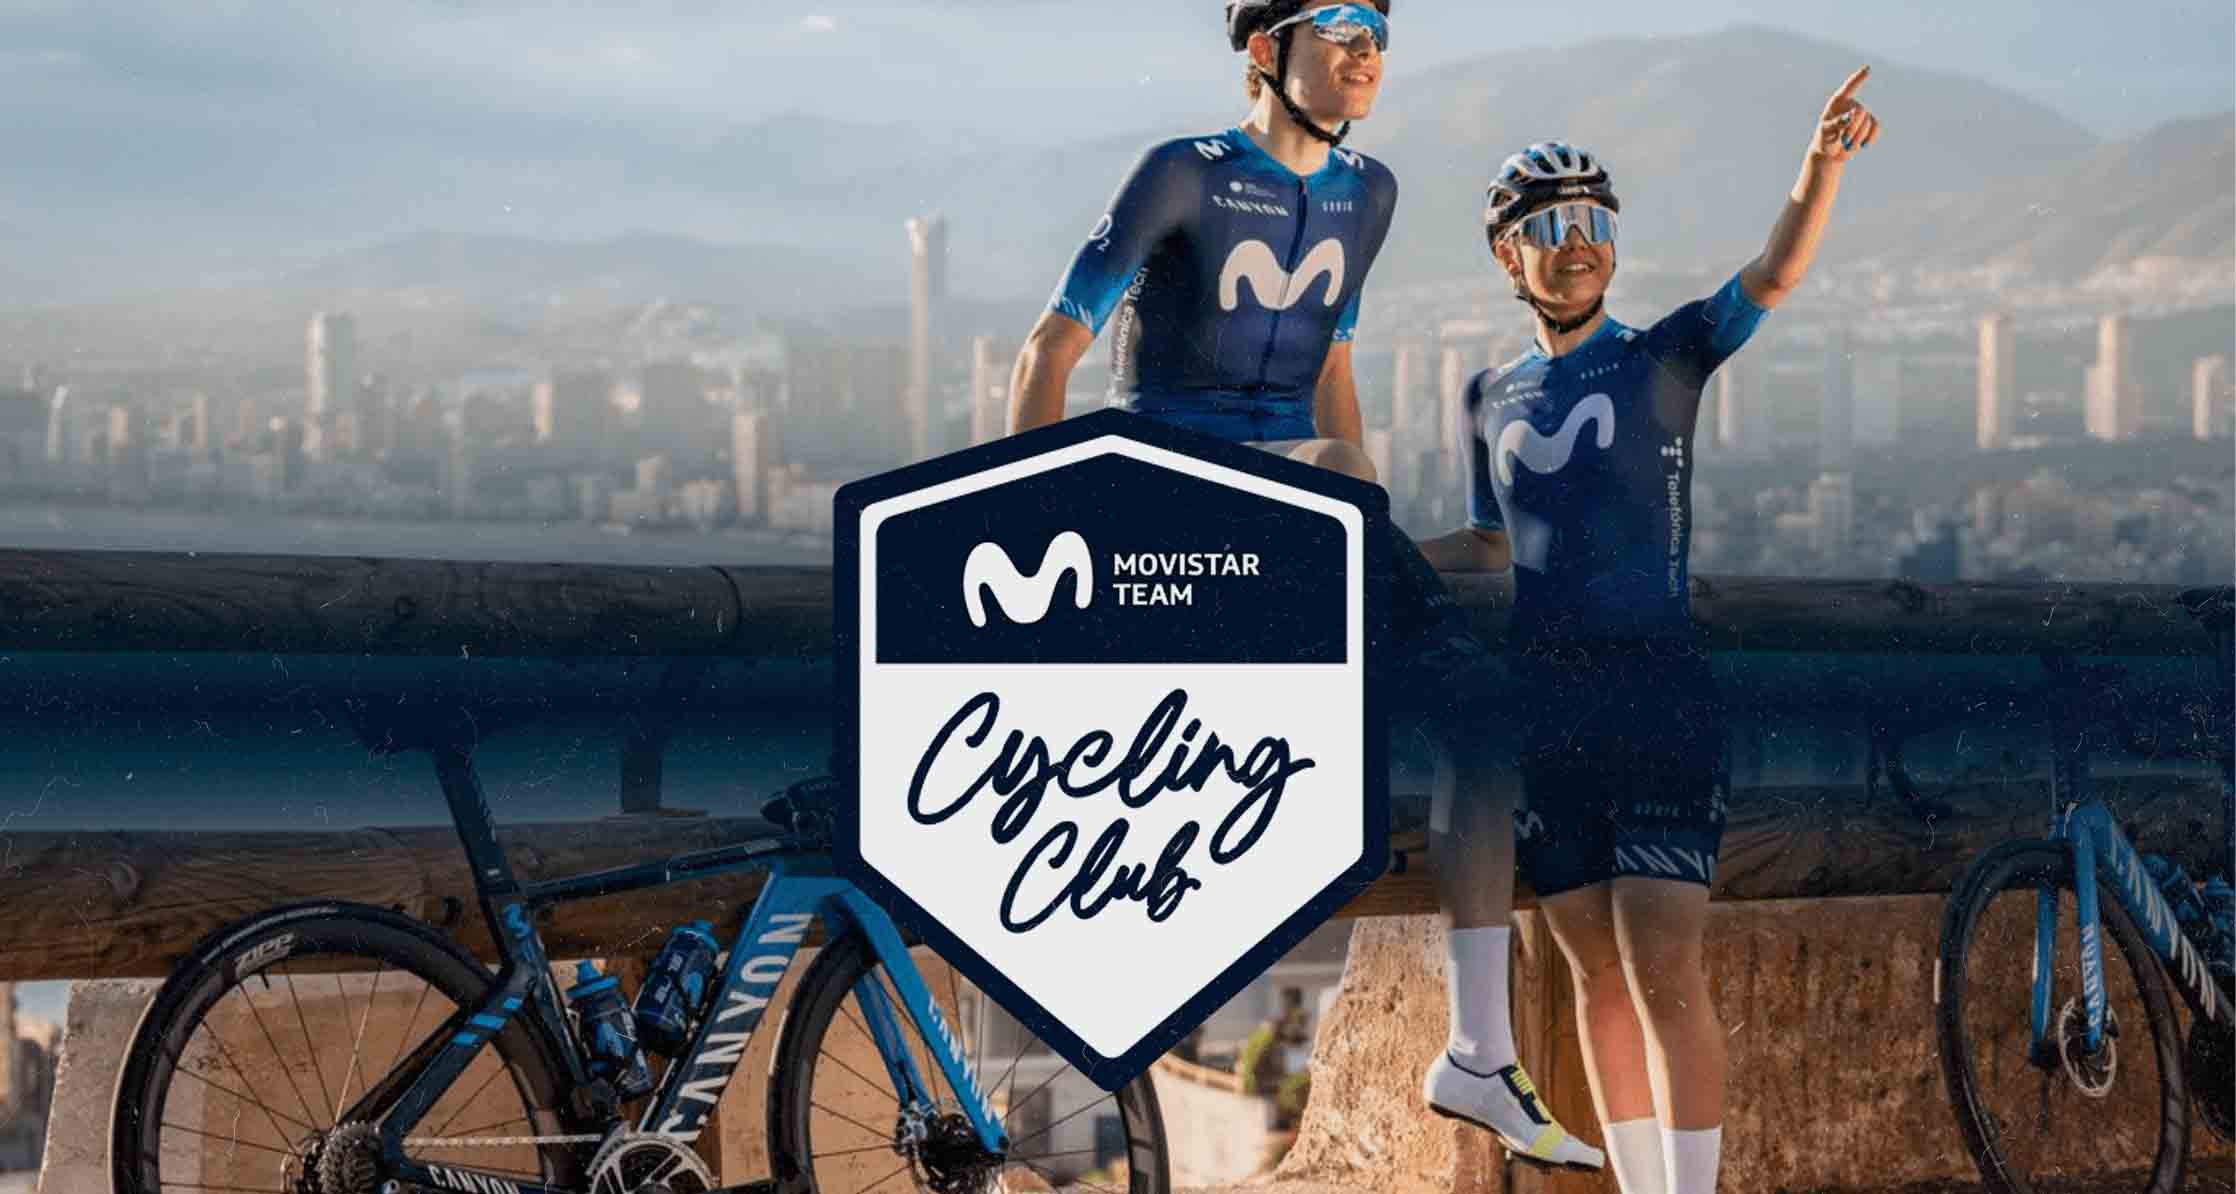 Movistar cycling team